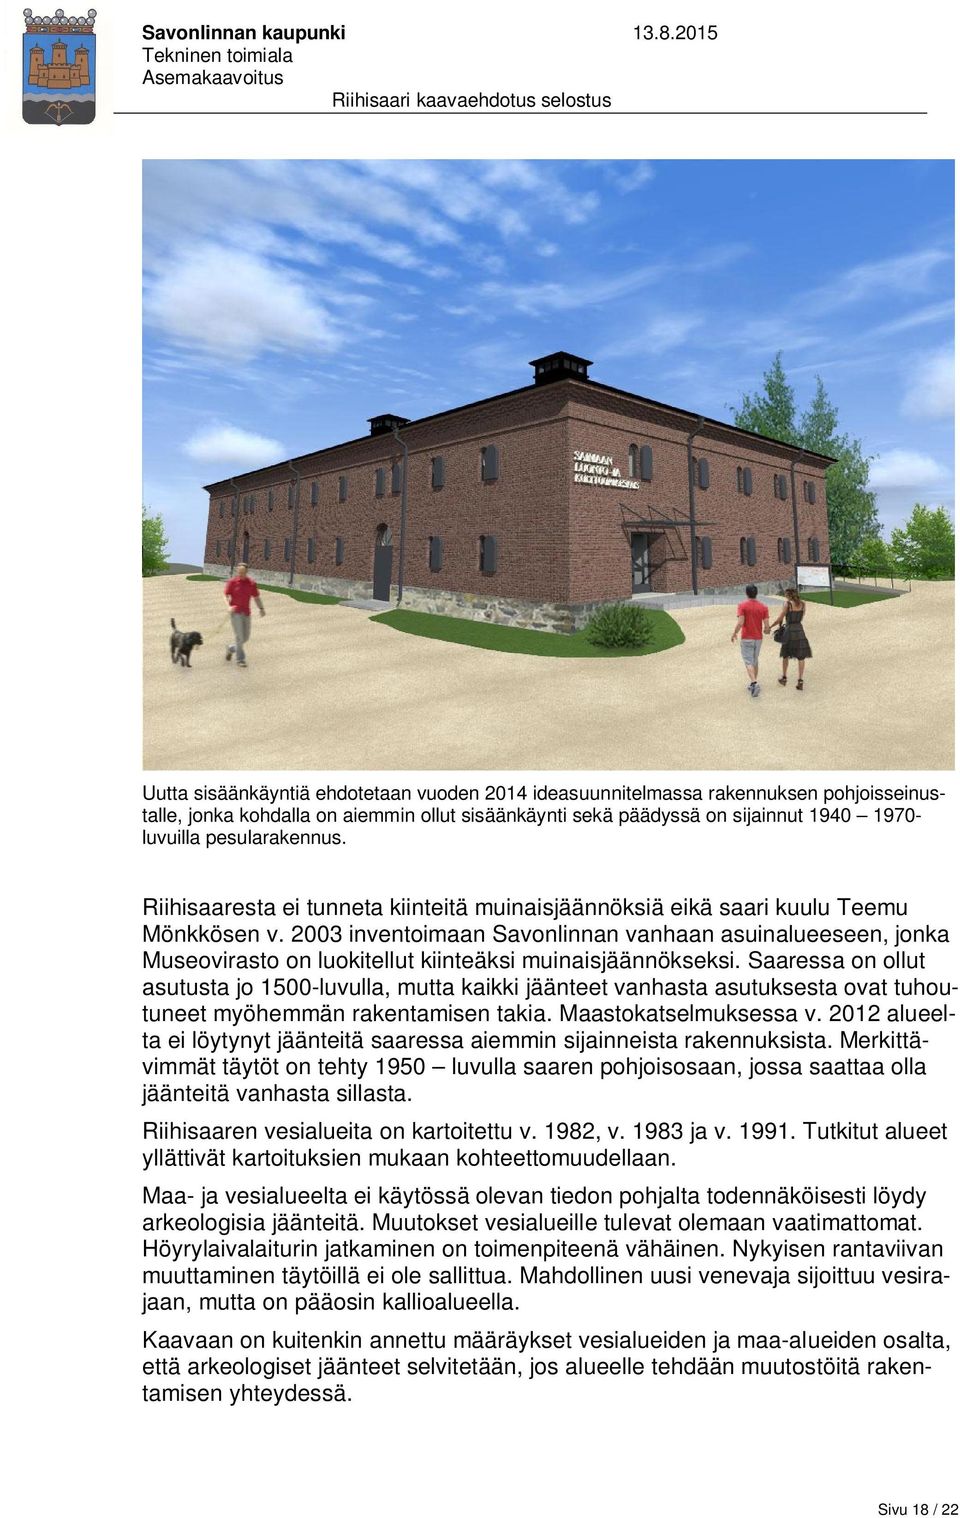 2003 inventoimaan Savonlinnan vanhaan asuinalueeseen, jonka Museovirasto on luokitellut kiinteäksi muinaisjäännökseksi.